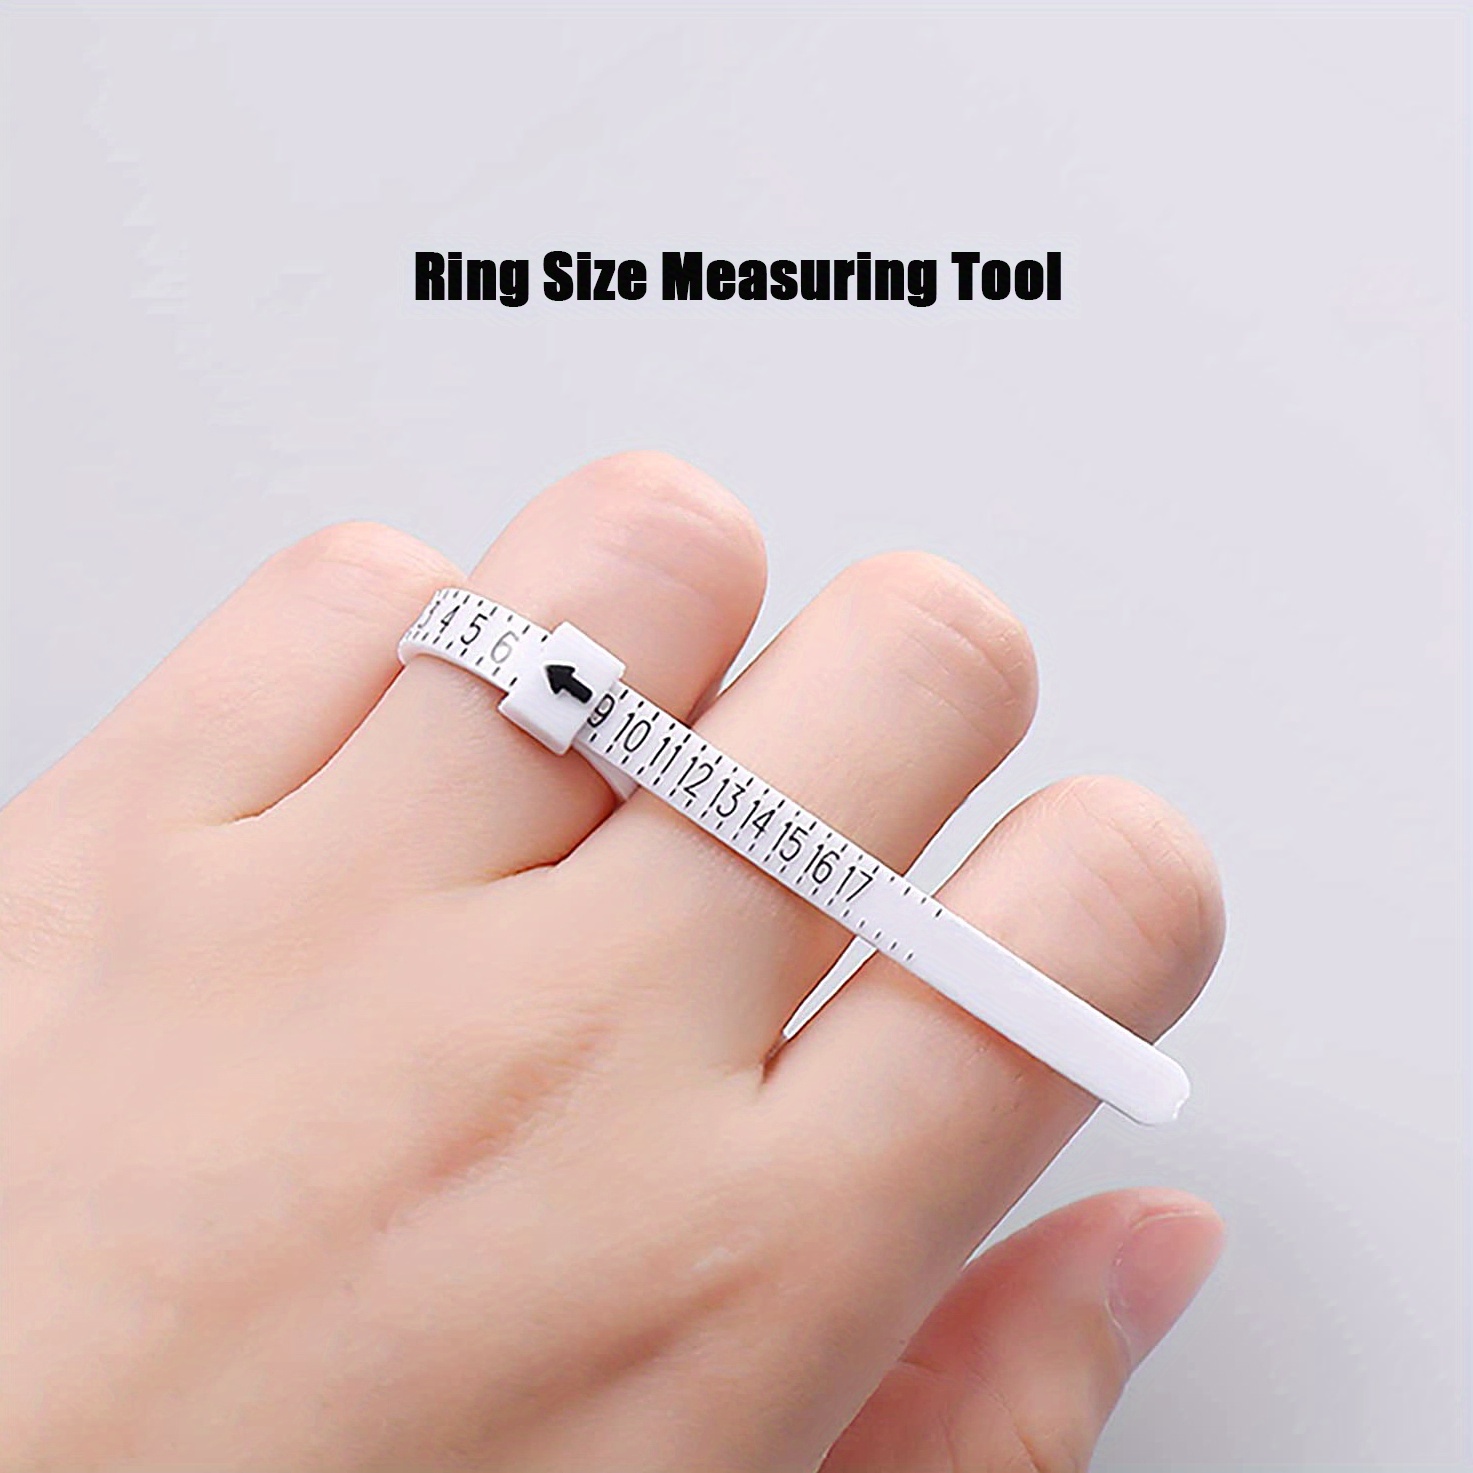 Ring Size Measuring Tool